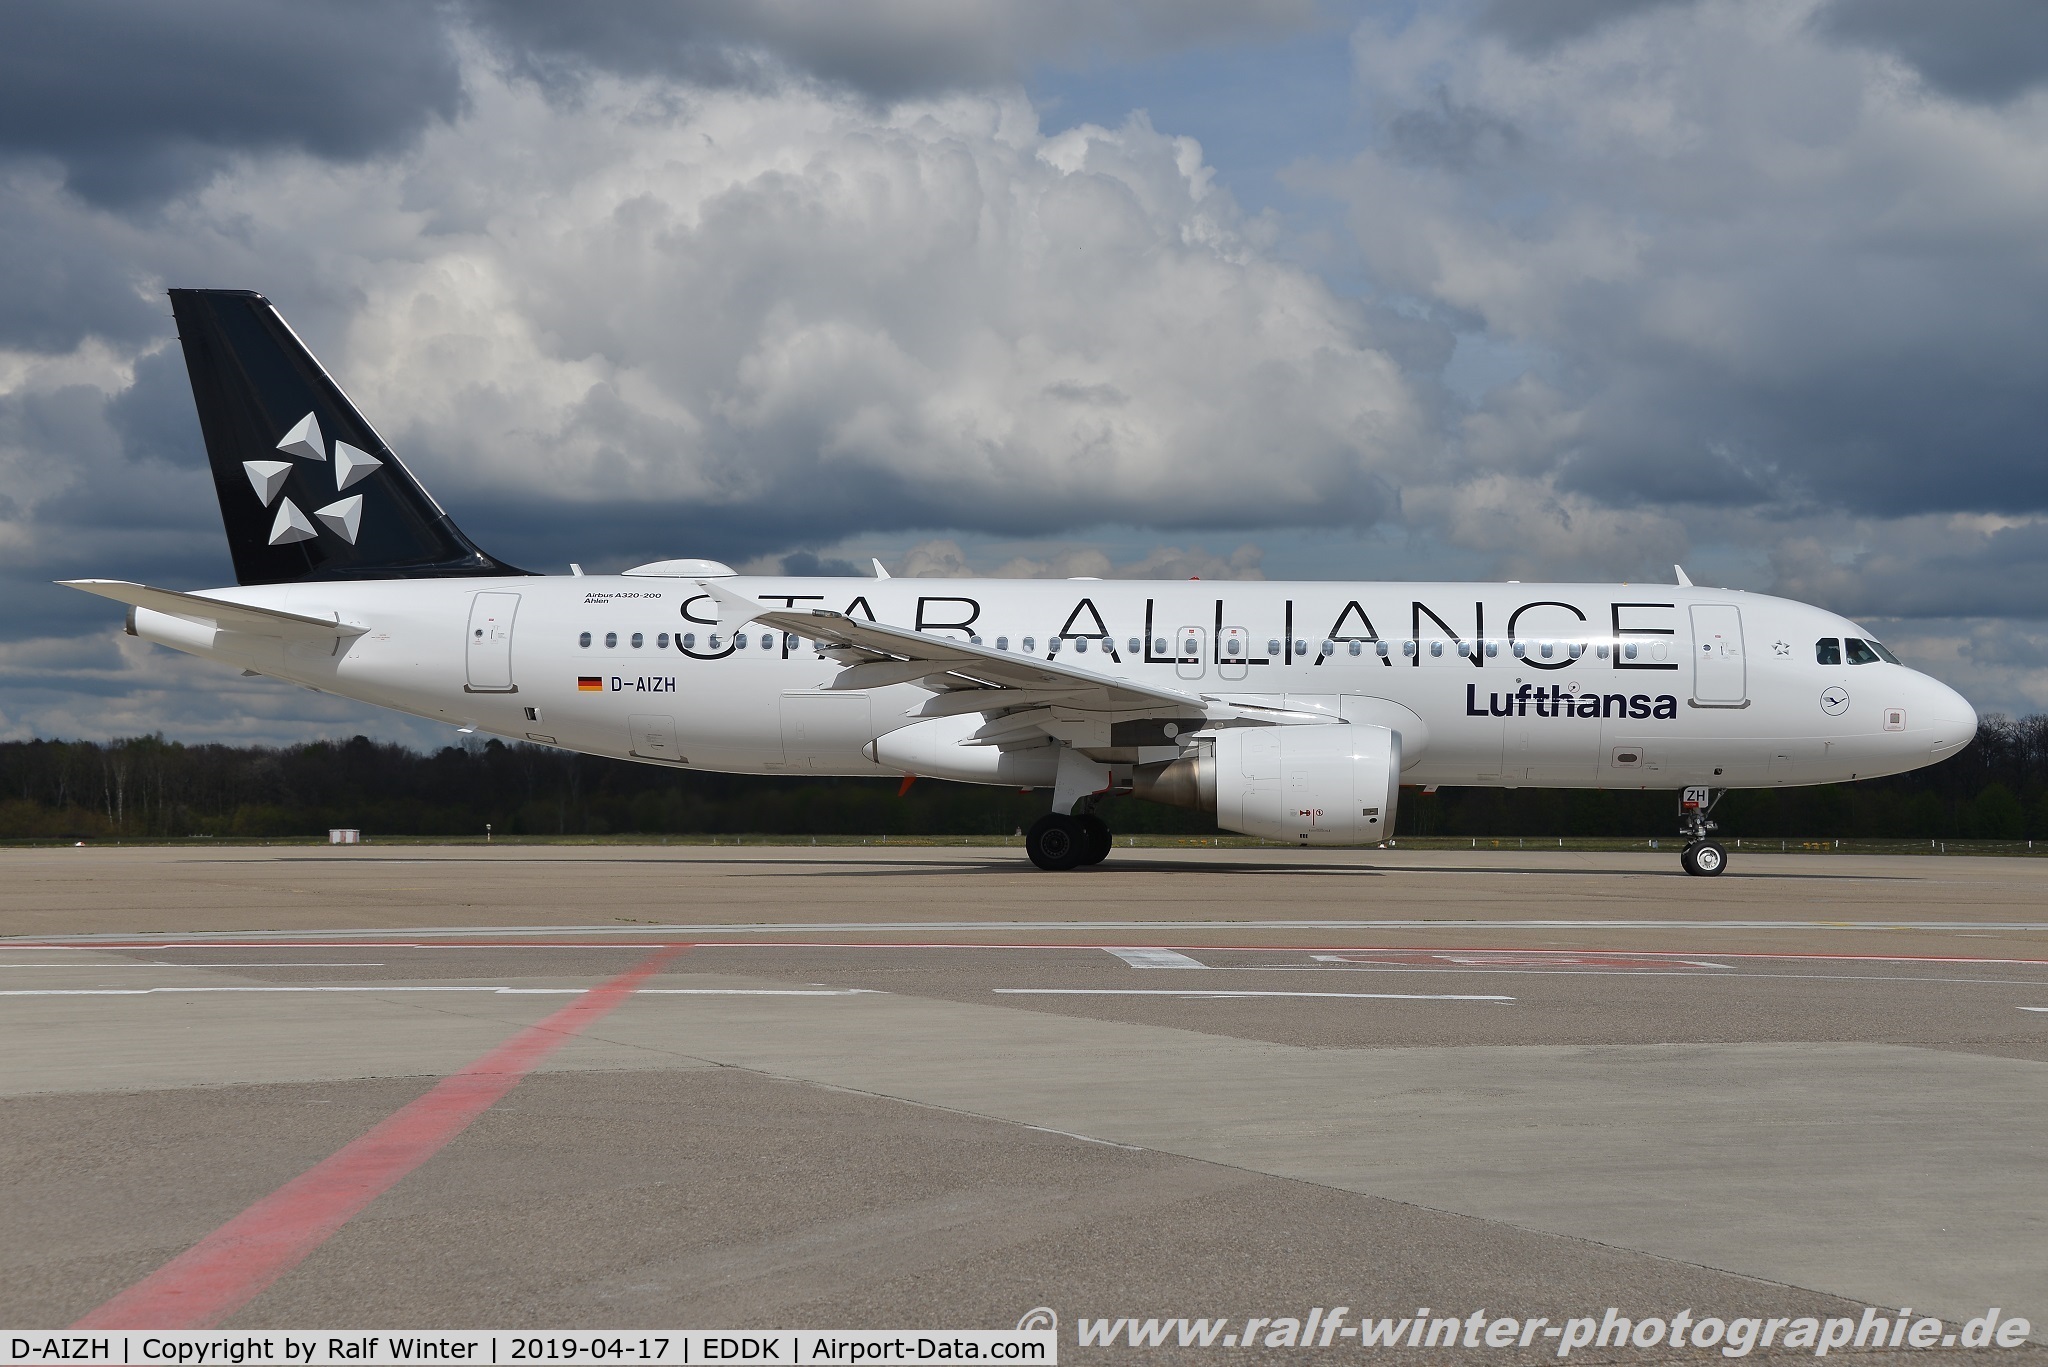 D-AIZH, 2010 Airbus A320-214 C/N 4363, Airbus A320-214 - LH DLH Lufthansa 'Star Alliance' 'Hanau' - 4363 - D-AIZH - 17.04.2019 - CGN